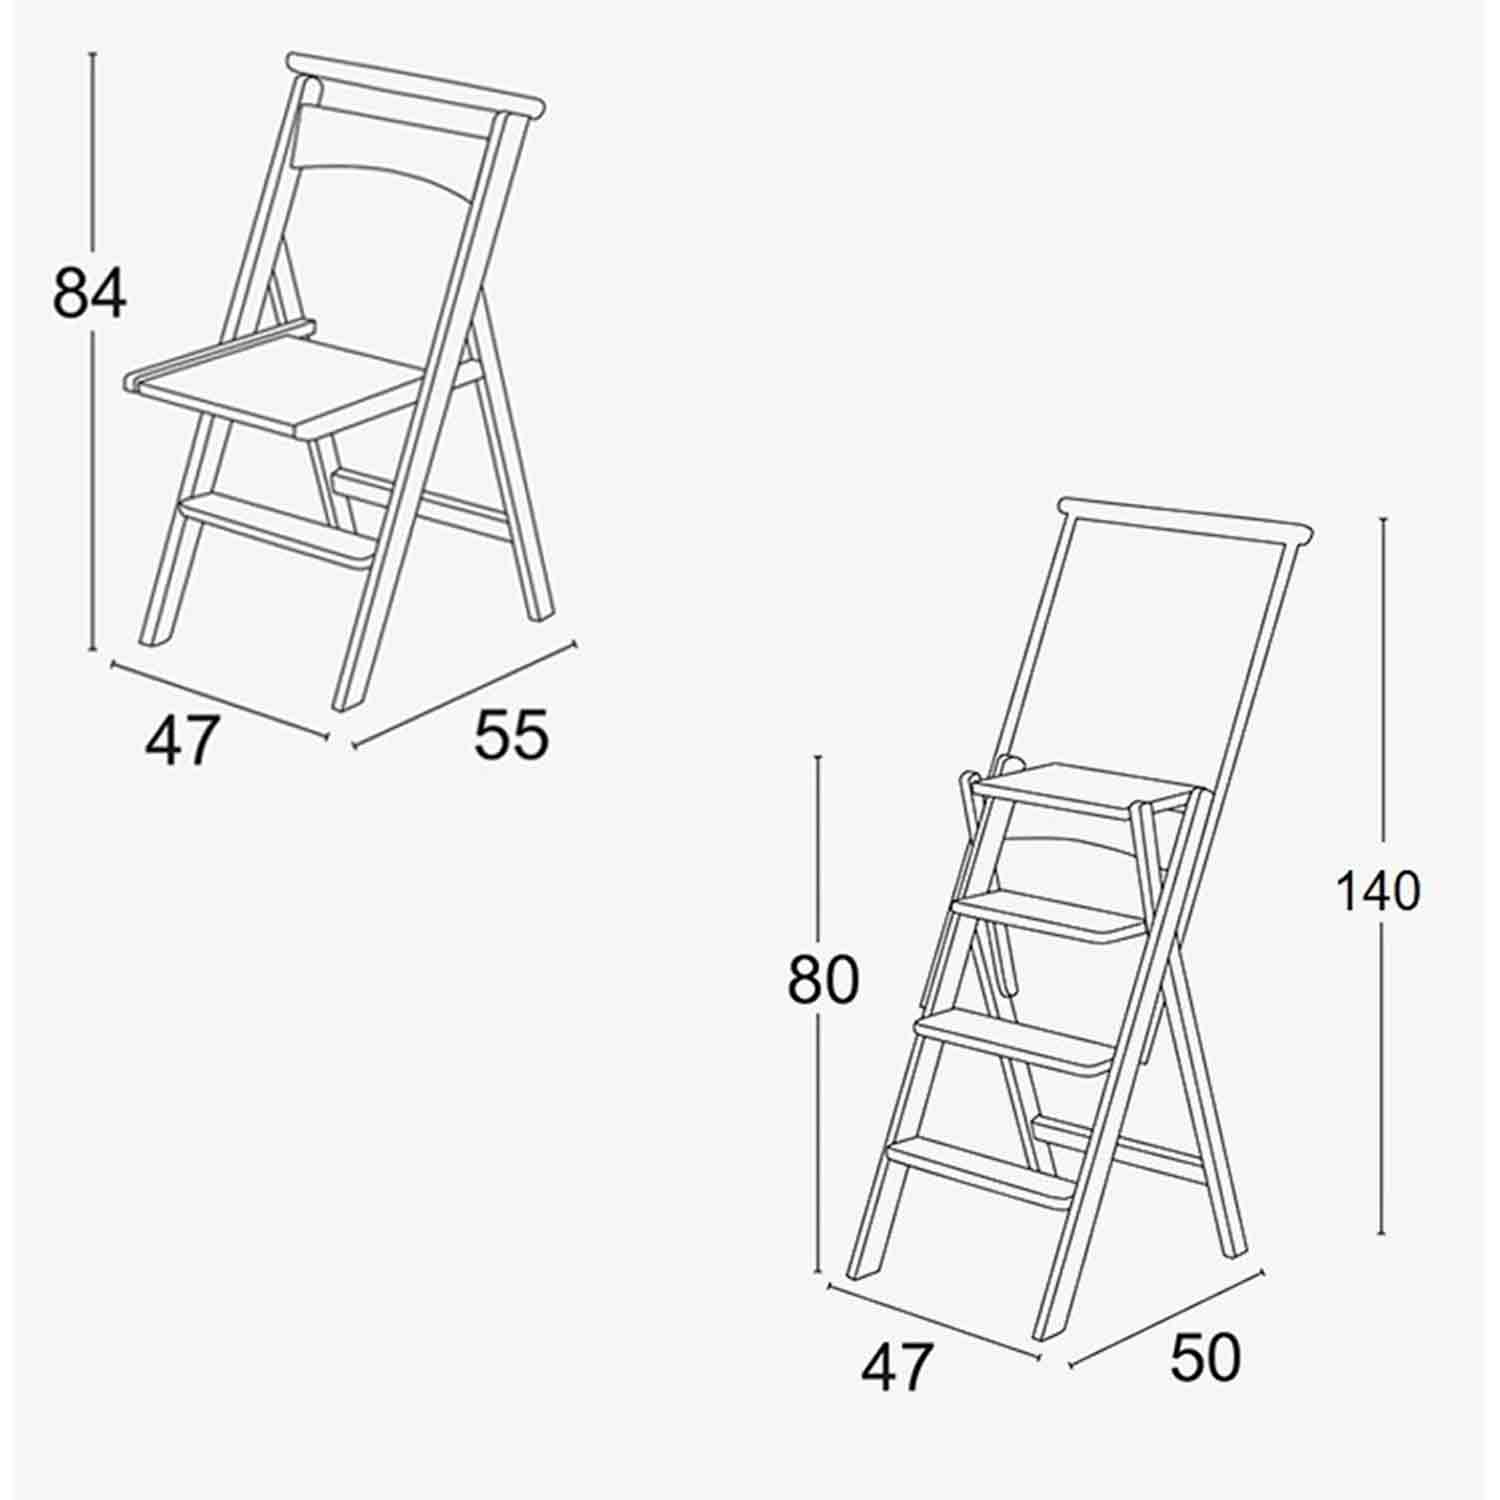 ELETTA - Silla Escalera, escalera de madera plegable, silla transformable, 47x50x140 cm, 47x55x84 cm